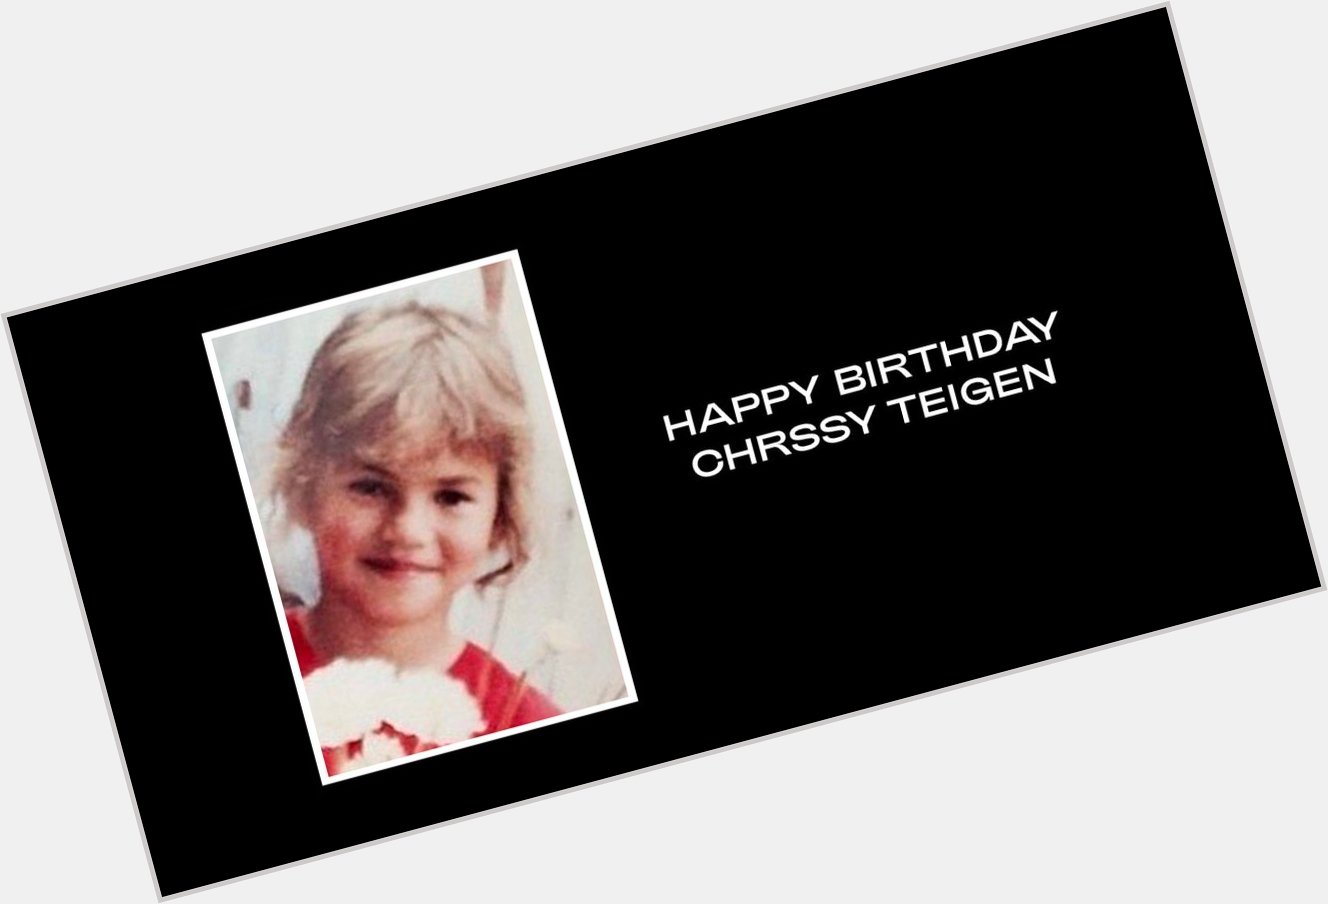  Happy Birthday Chrissy Teigen  